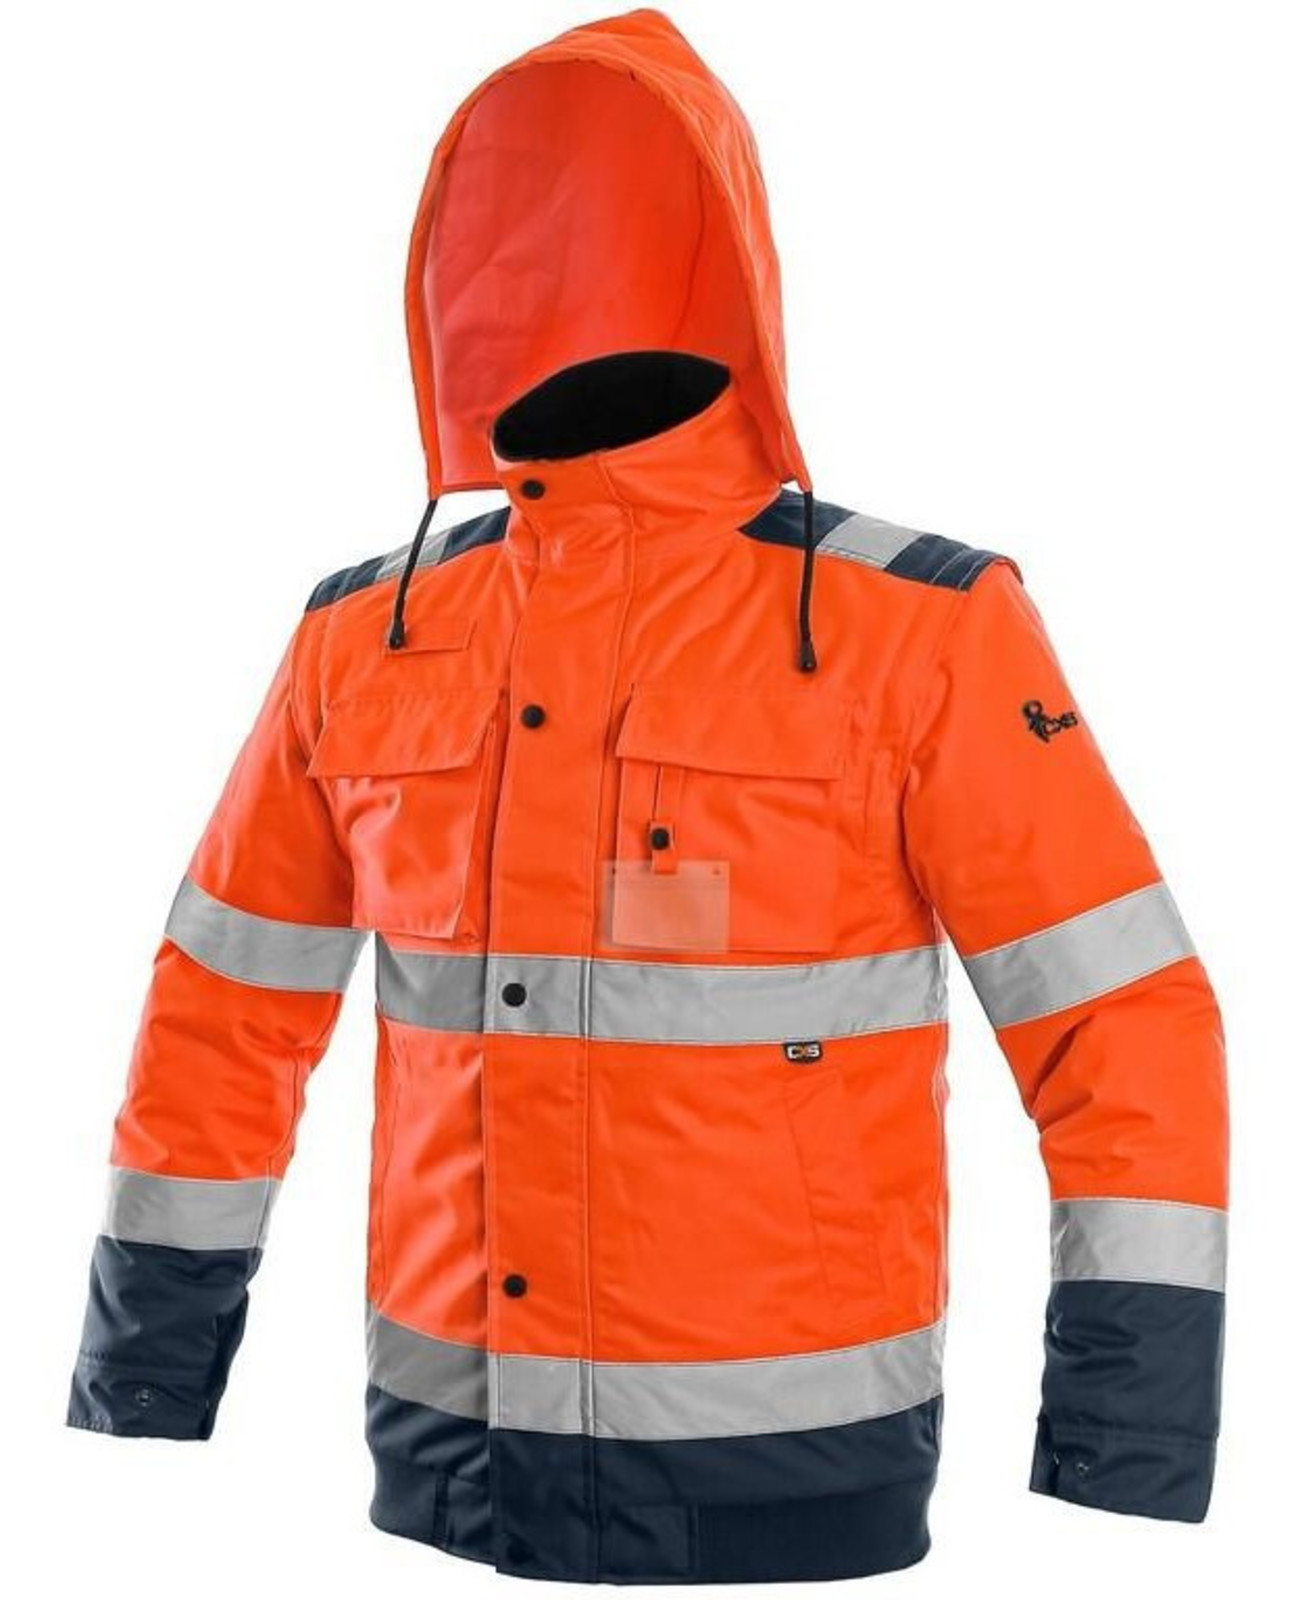 Zimná reflexná bunda CXS Luton 2v1 - veľkosť: L, farba: oranžová/navy